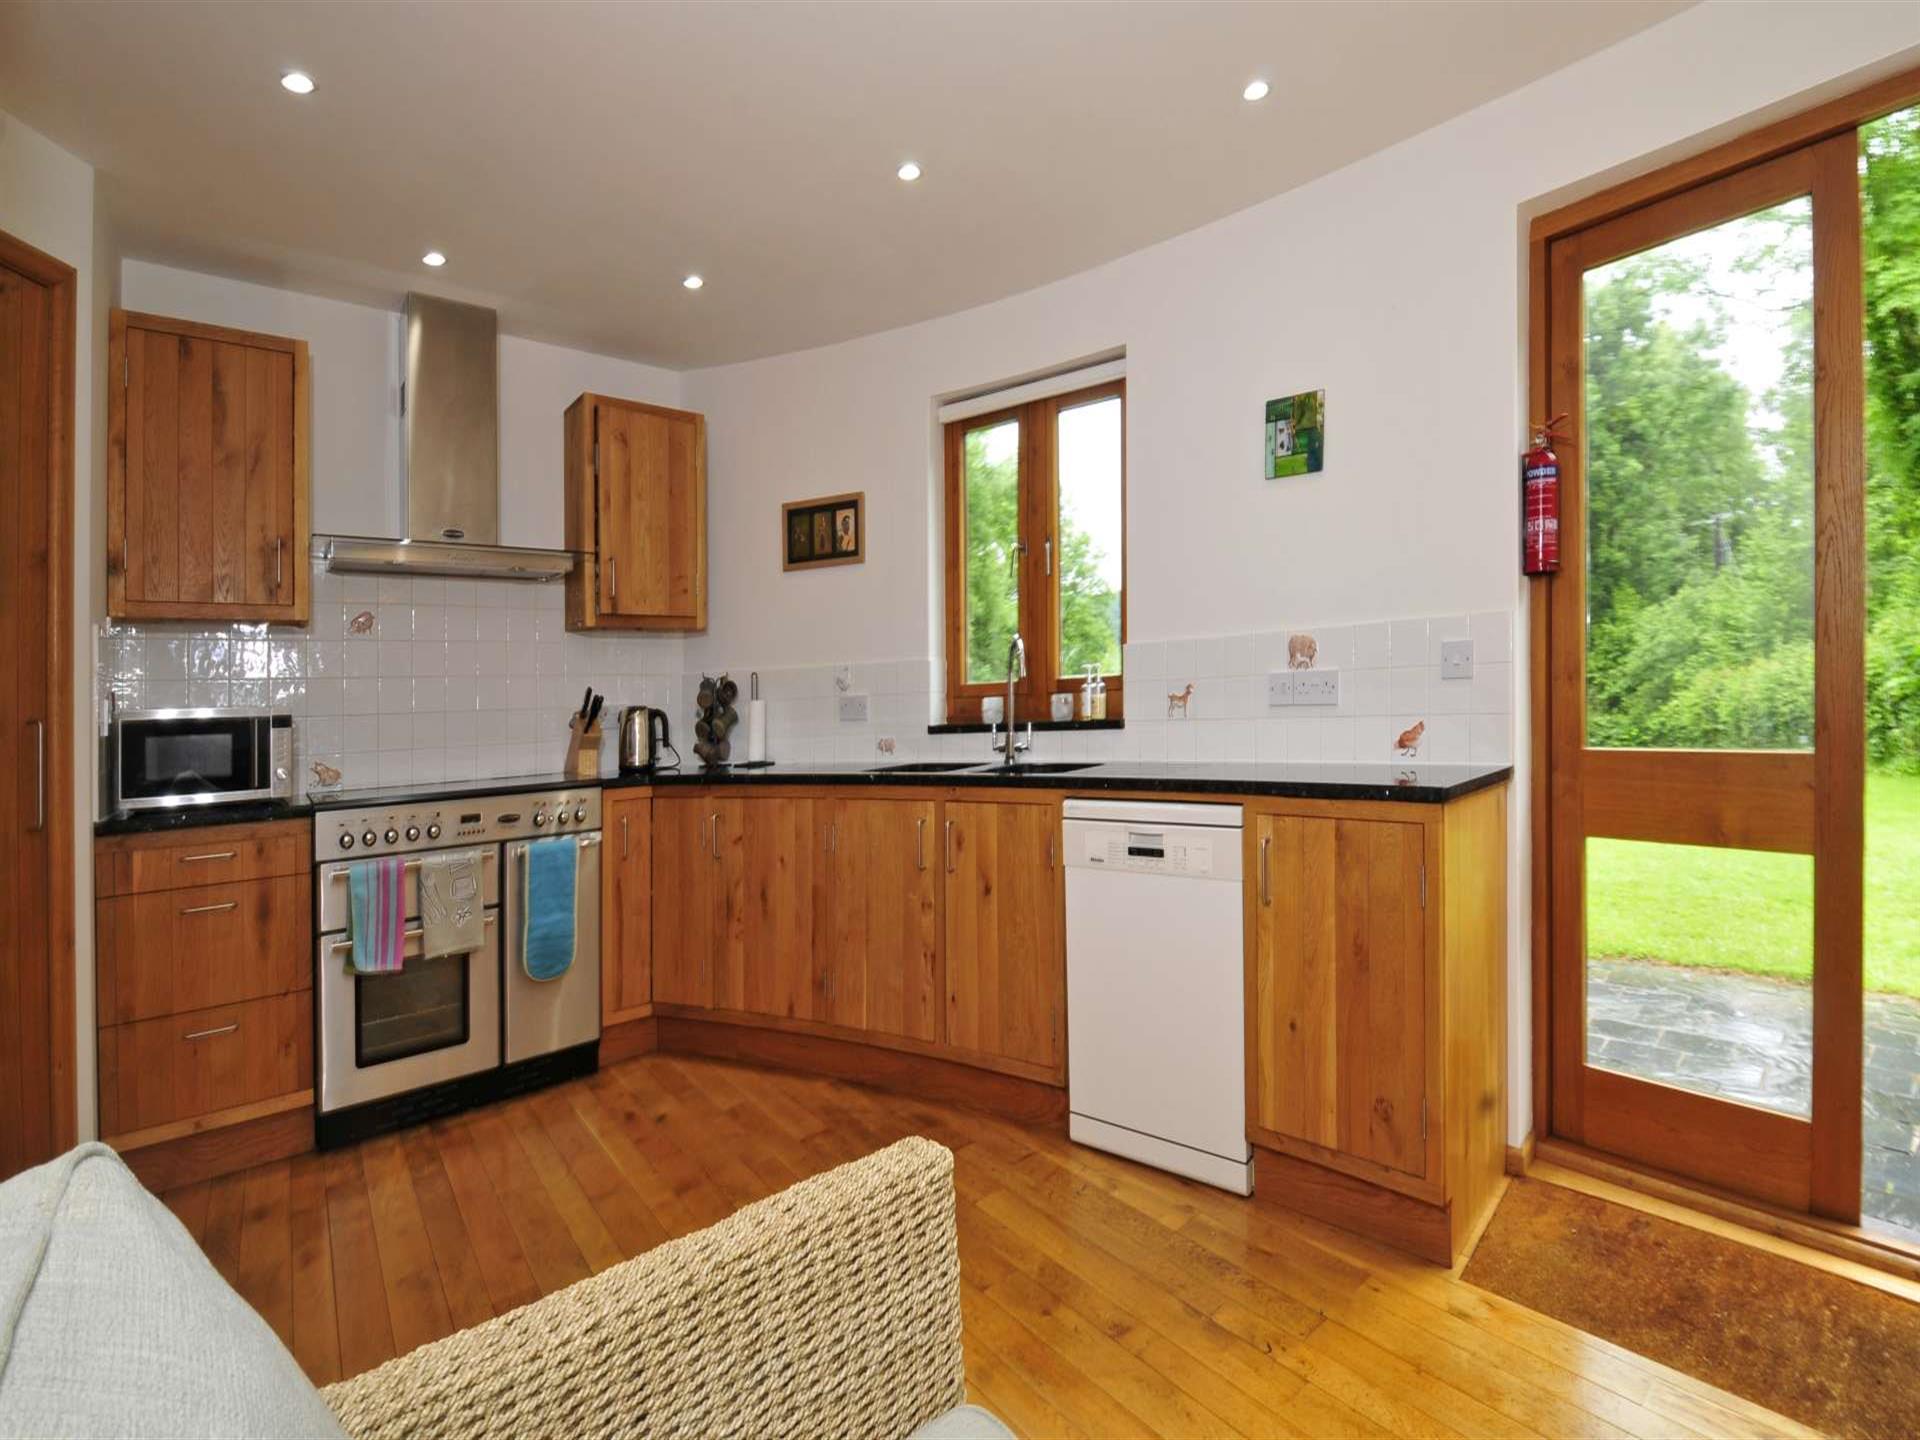 Carmarthenshire holiday cottage sleeping 8-kitchen